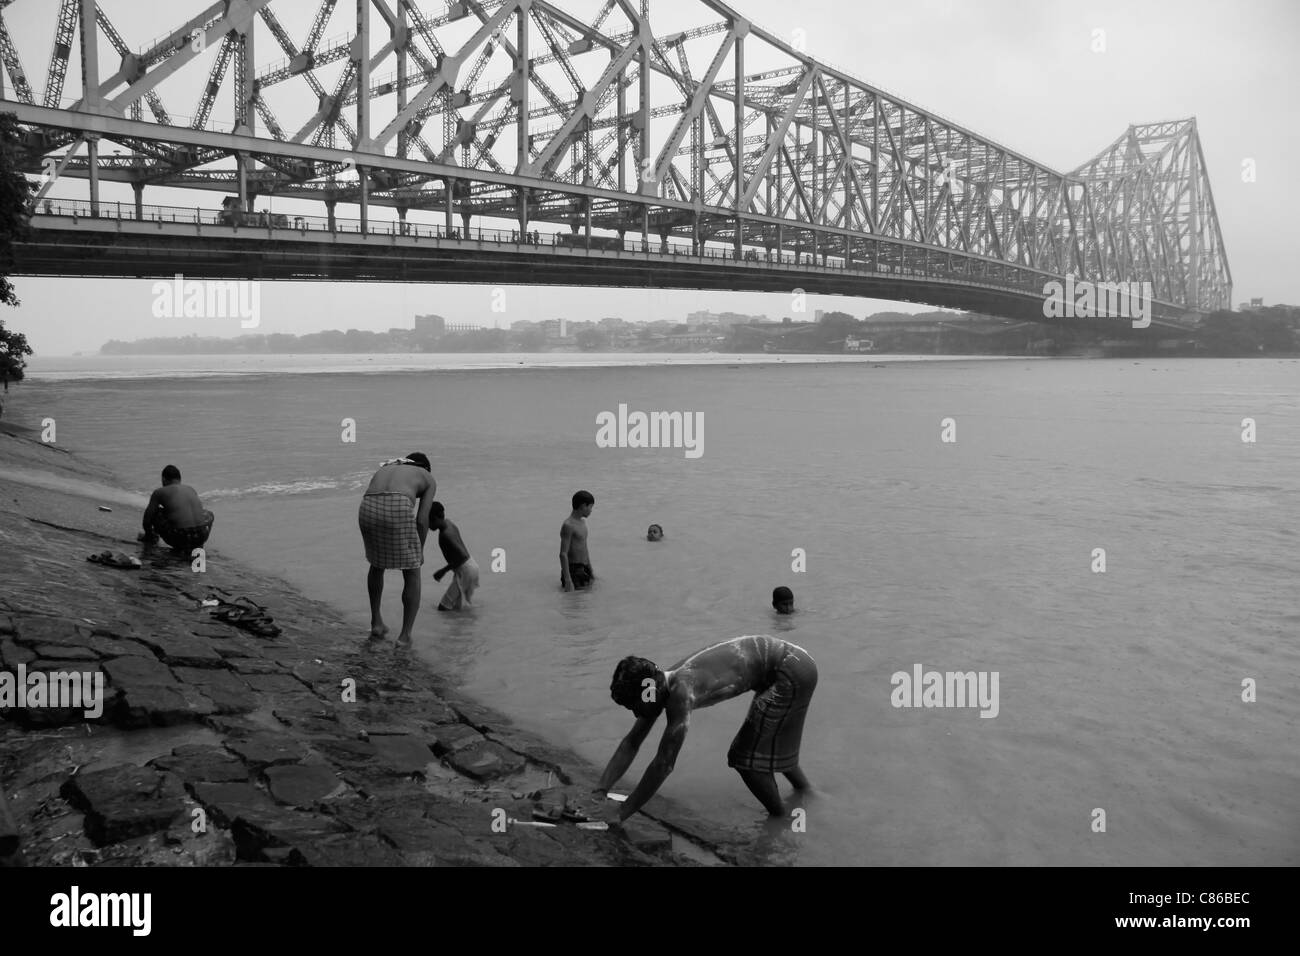 Les hommes hindous se baignent dans le fleuve Hooghly sous Howrah Bridge à Kolkata (Calcutta), Inde Banque D'Images